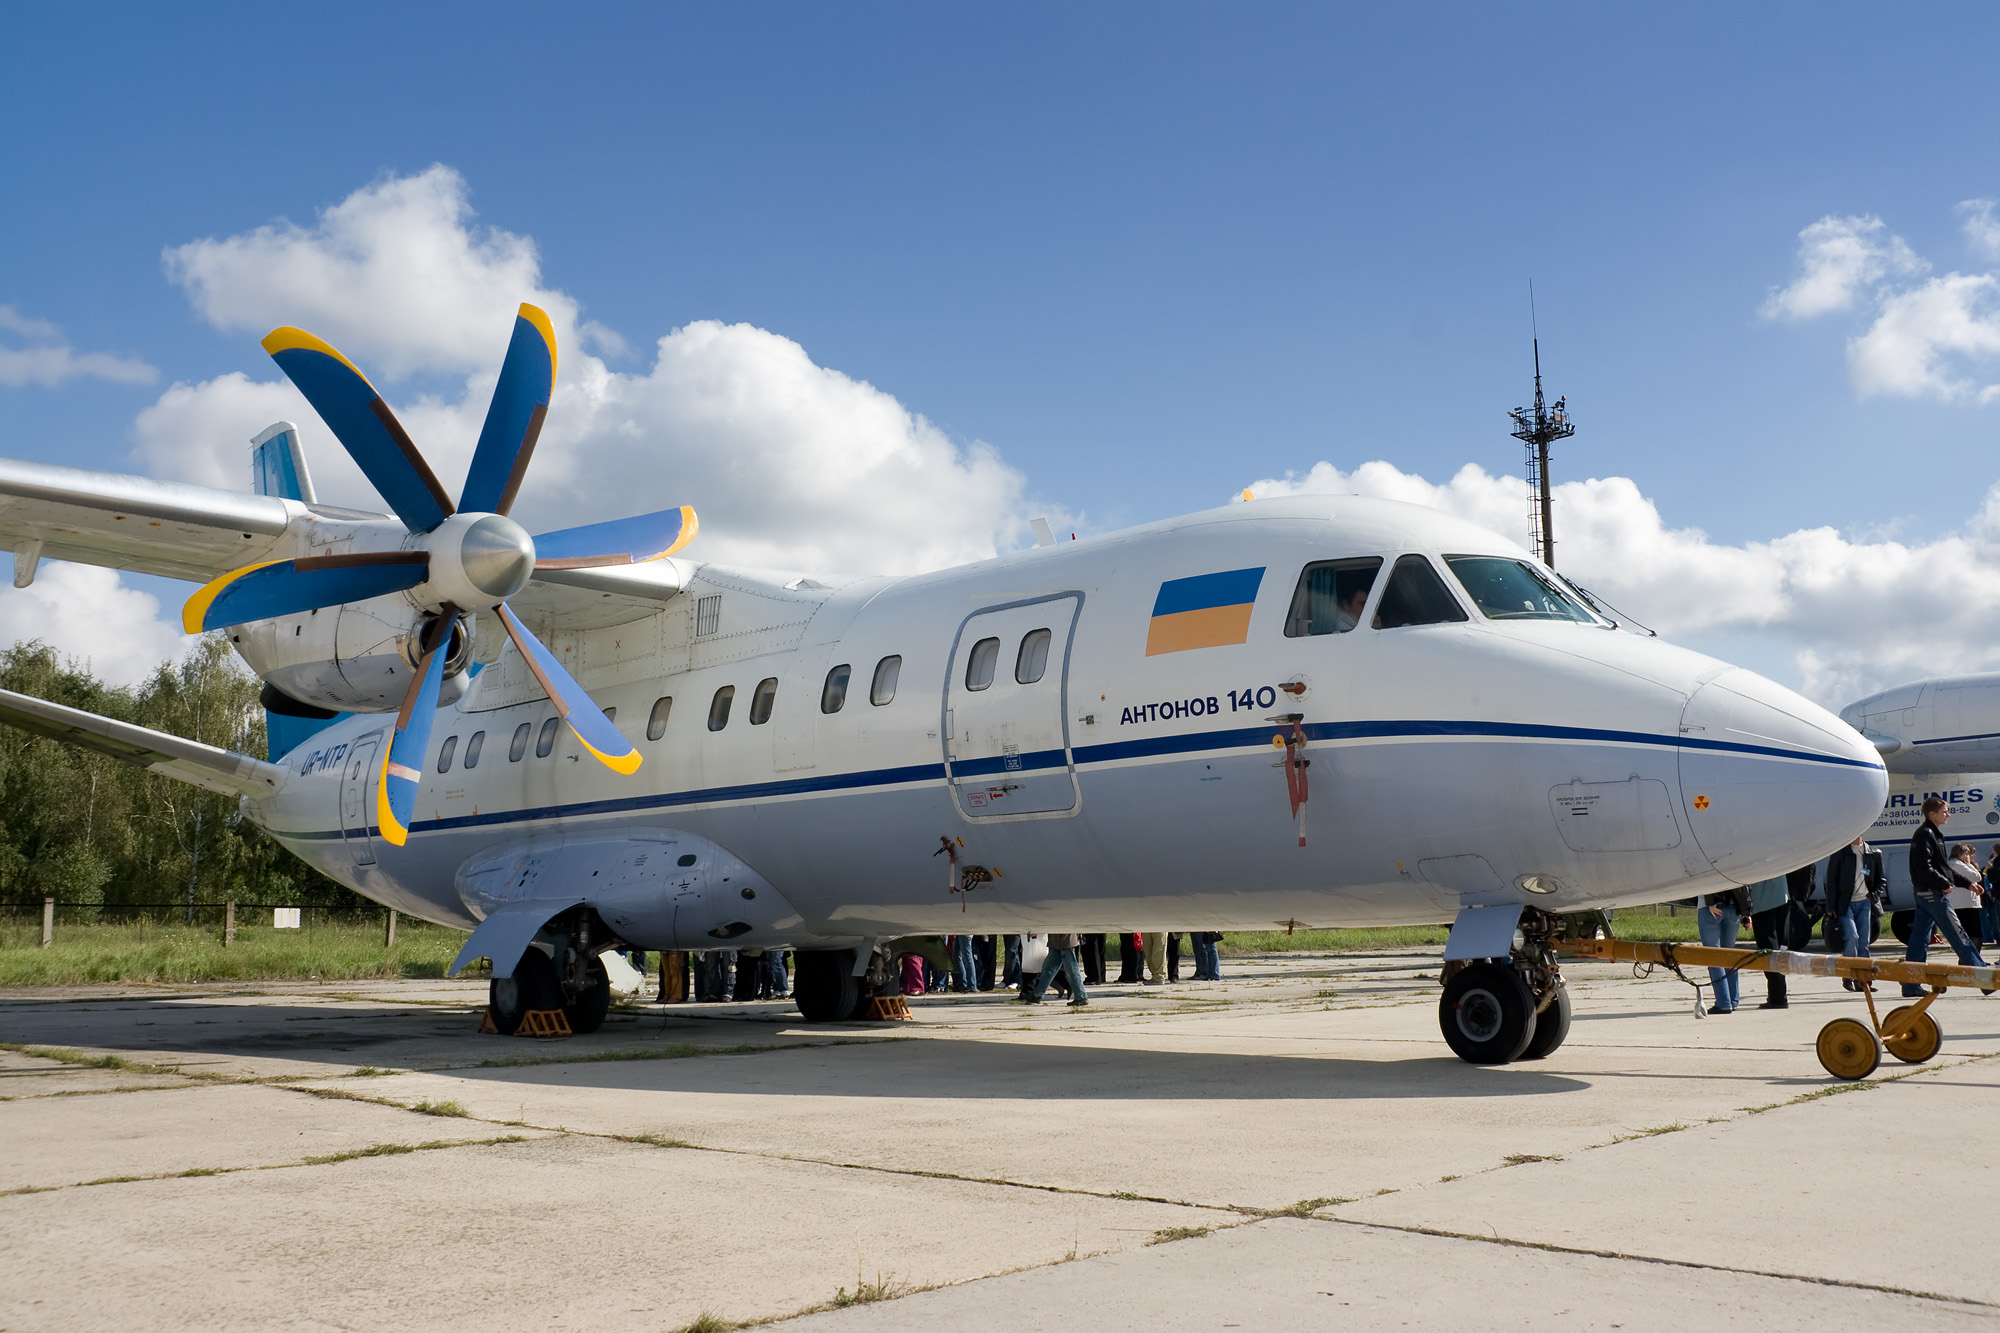 Antonov An-140 previous